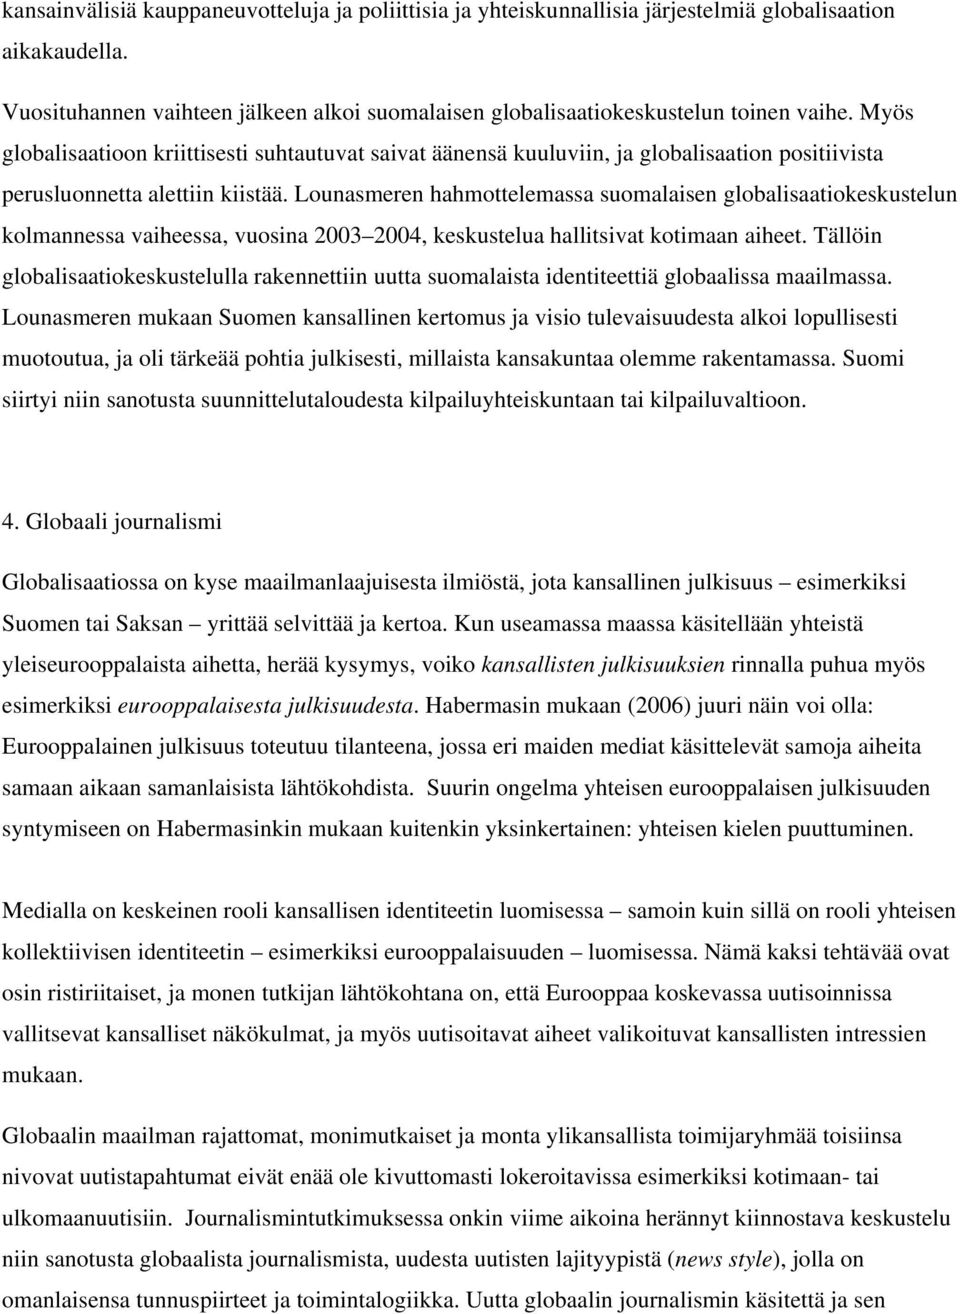 Lounasmeren hahmottelemassa suomalaisen globalisaatiokeskustelun kolmannessa vaiheessa, vuosina 2003 2004, keskustelua hallitsivat kotimaan aiheet.